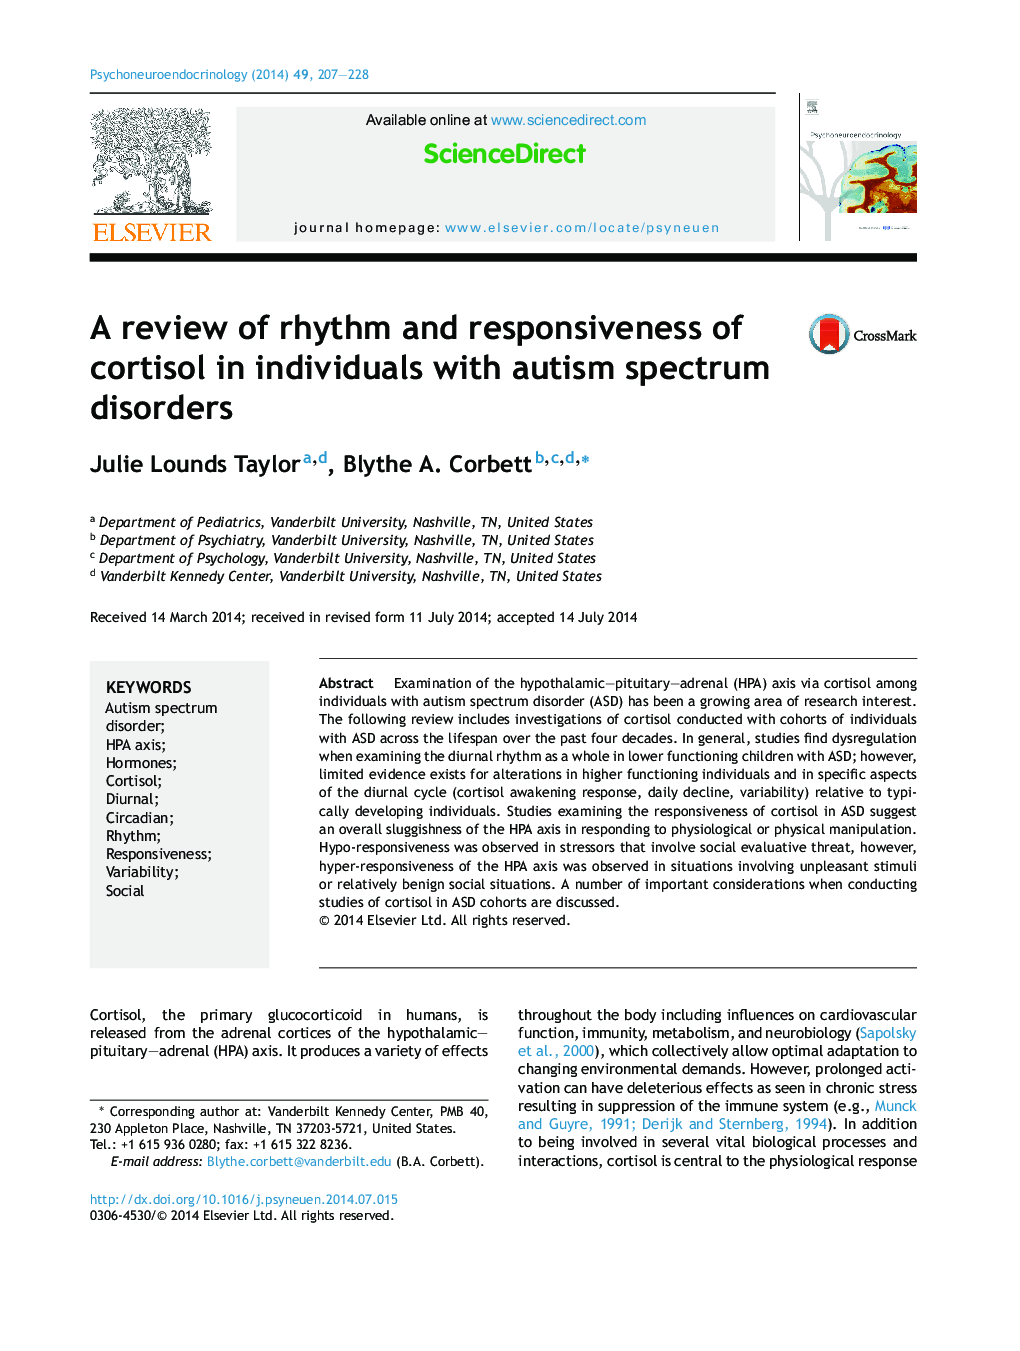 بررسی ریتم و پاسخ کورتیزول در افراد مبتلا به اختلالات طیف اوتیسم 